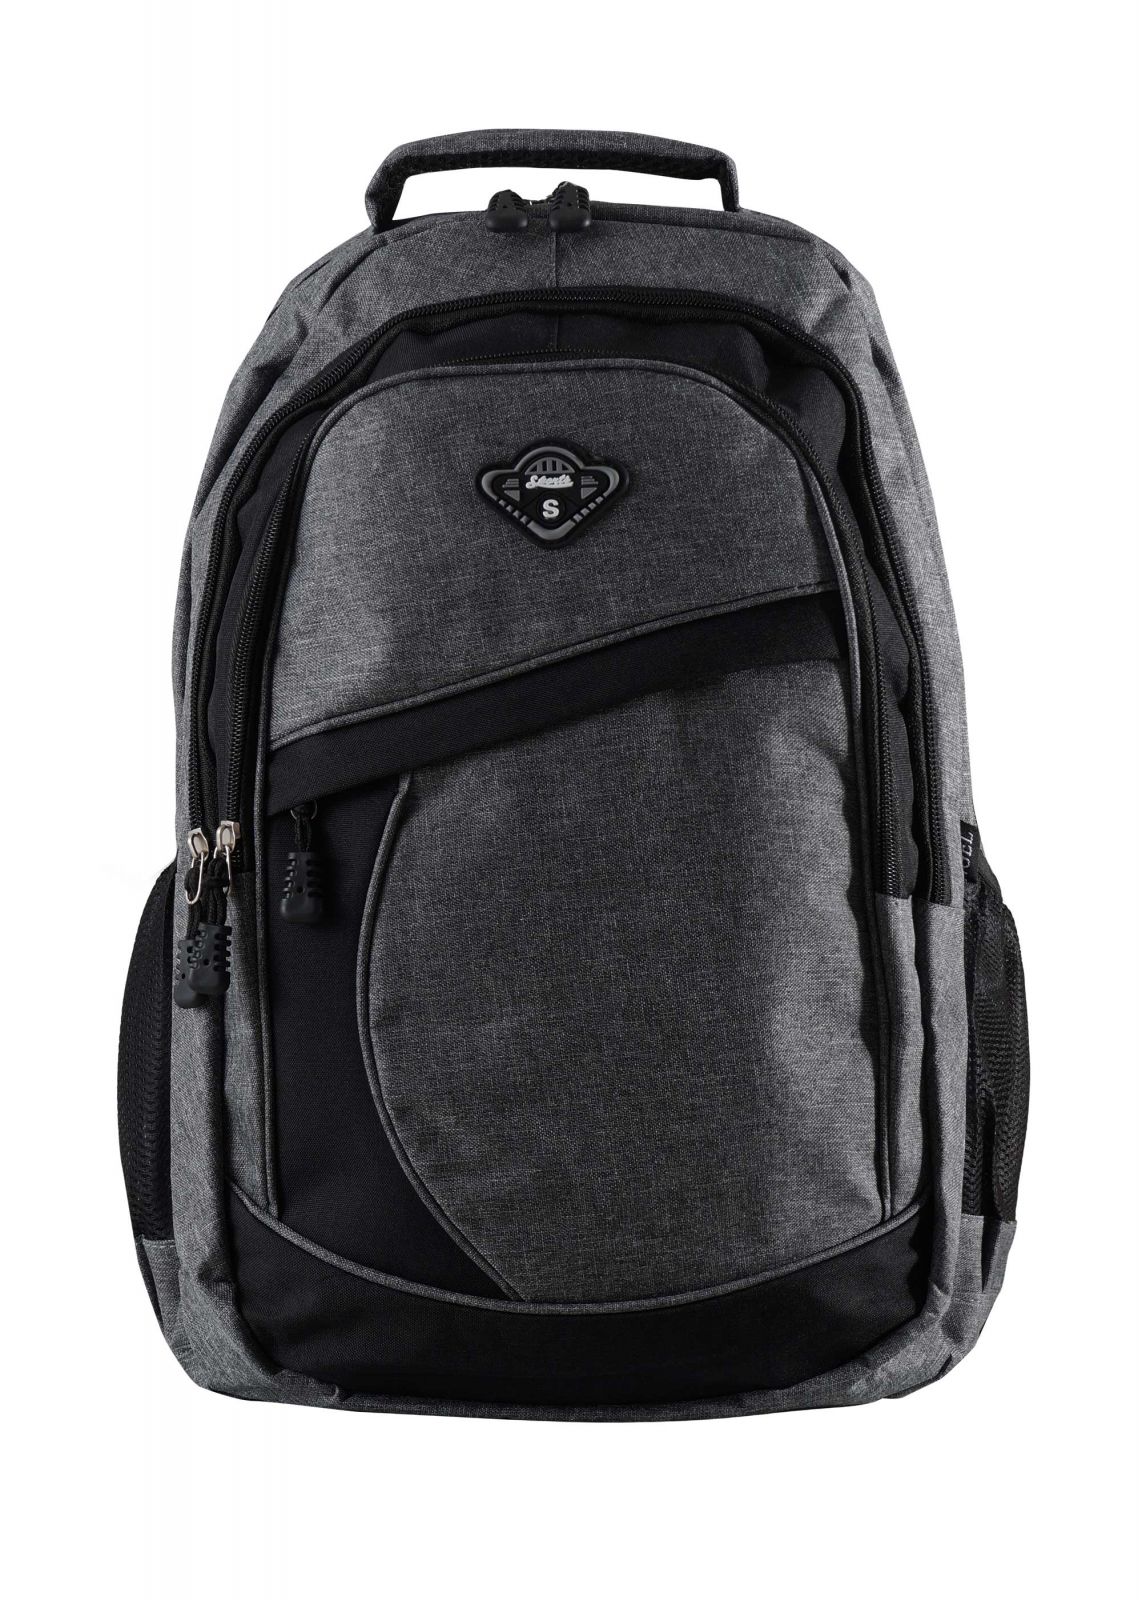 Ανδρικό σακίδιο πλάτης backpack. Casual Style.